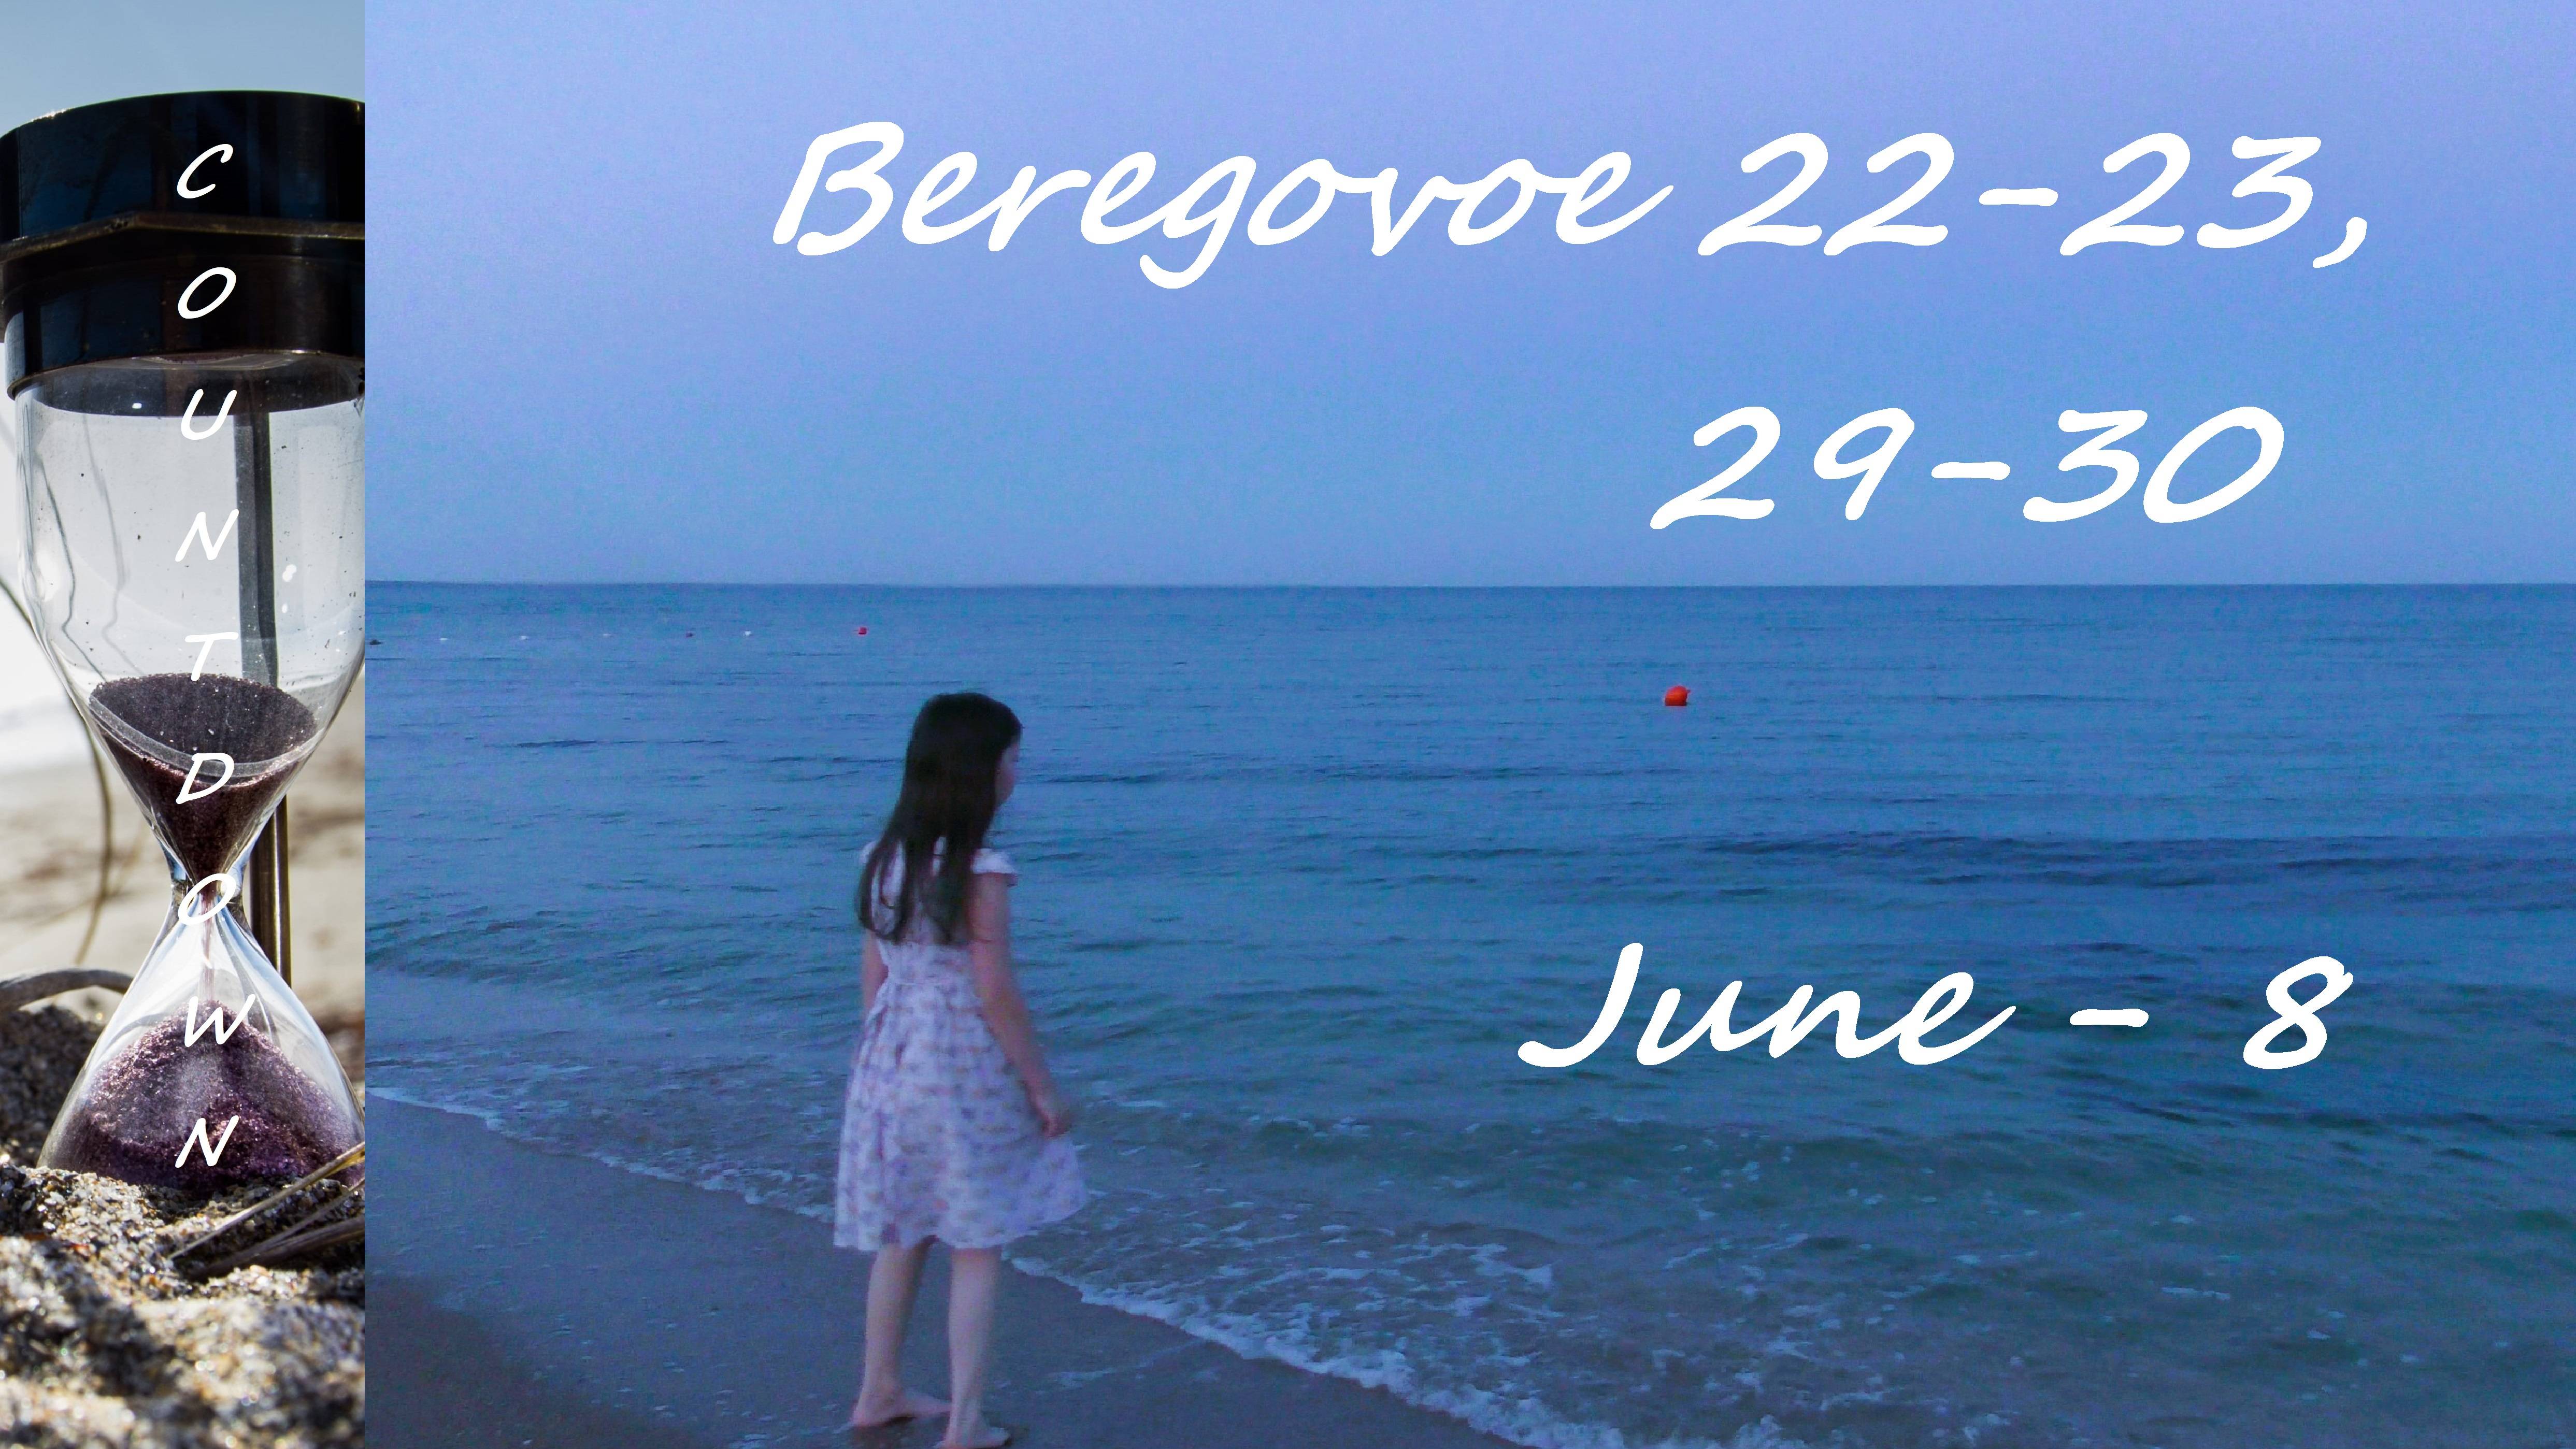 Beregovoe 22-23, 29-30 June - 8